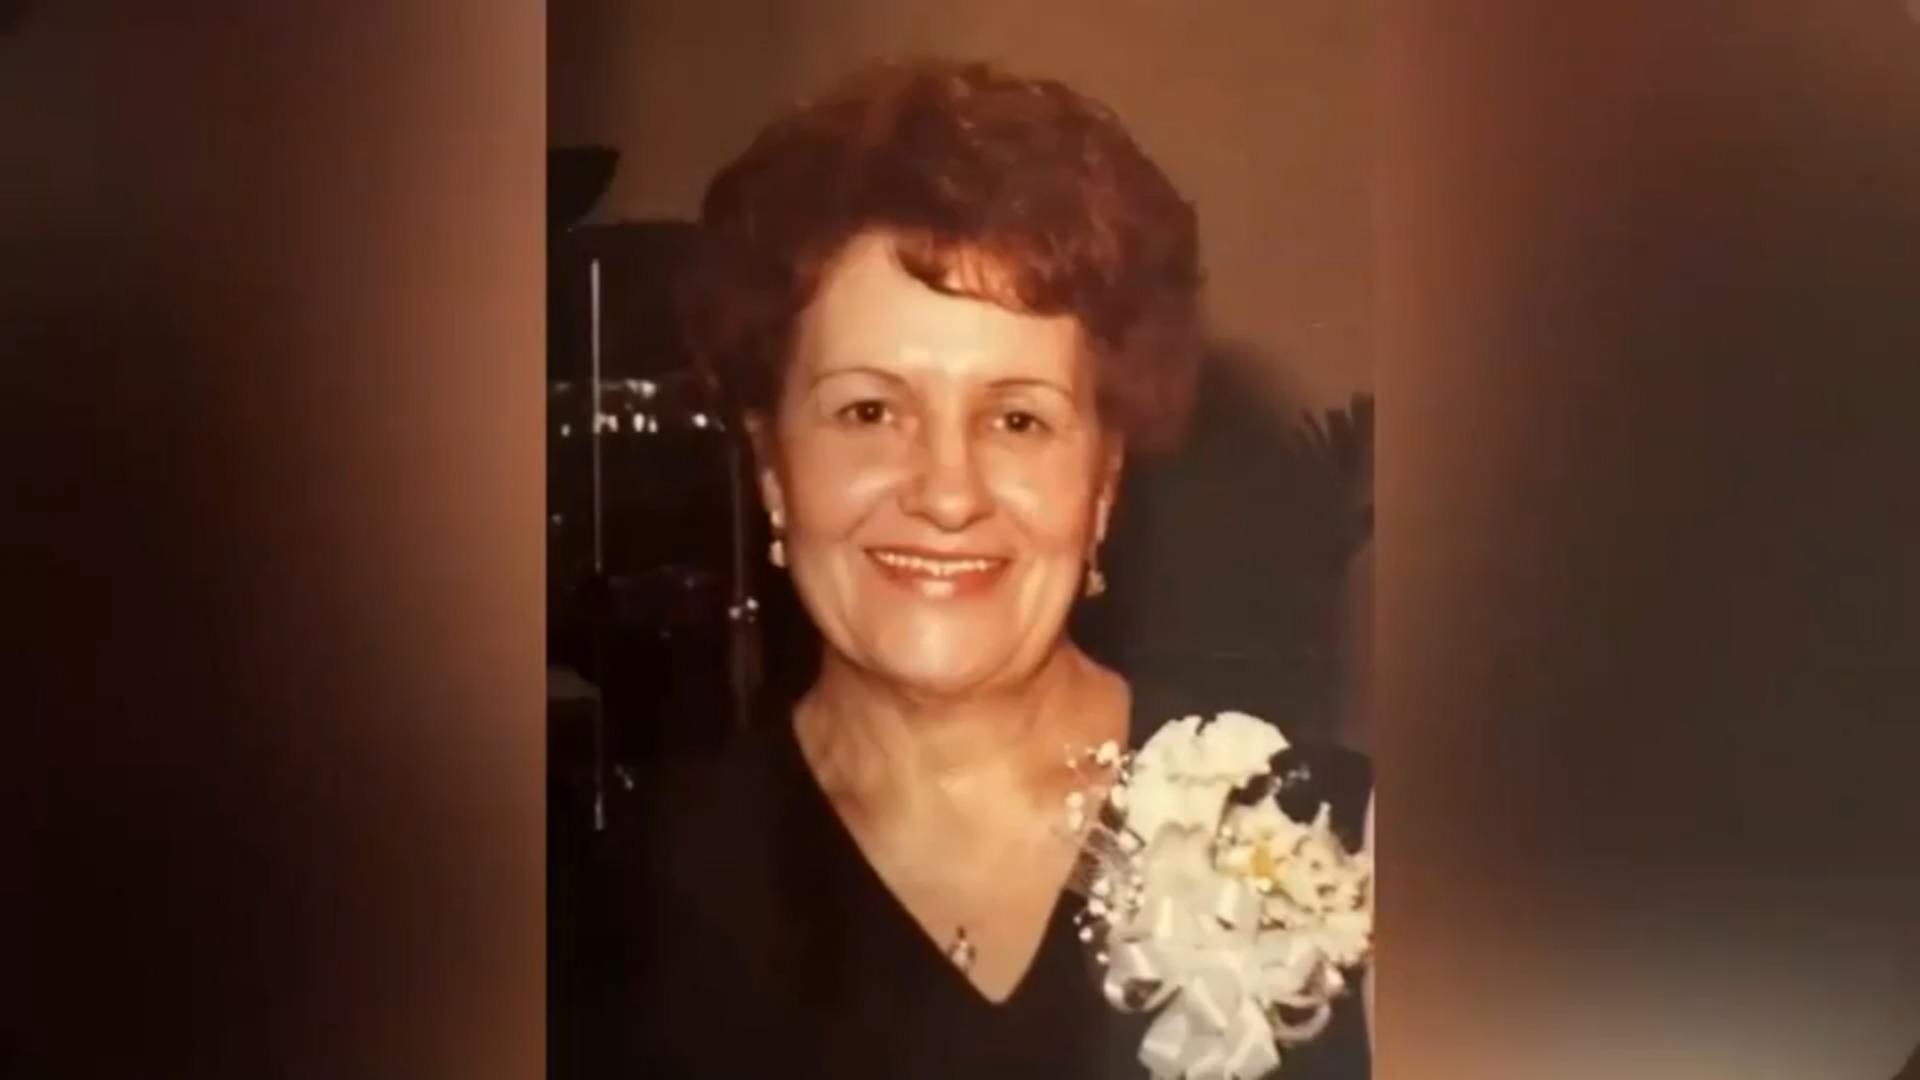 Frau hatte tote Mutter jahrelang in der Gefriertruhe Horrorfund in Chicago